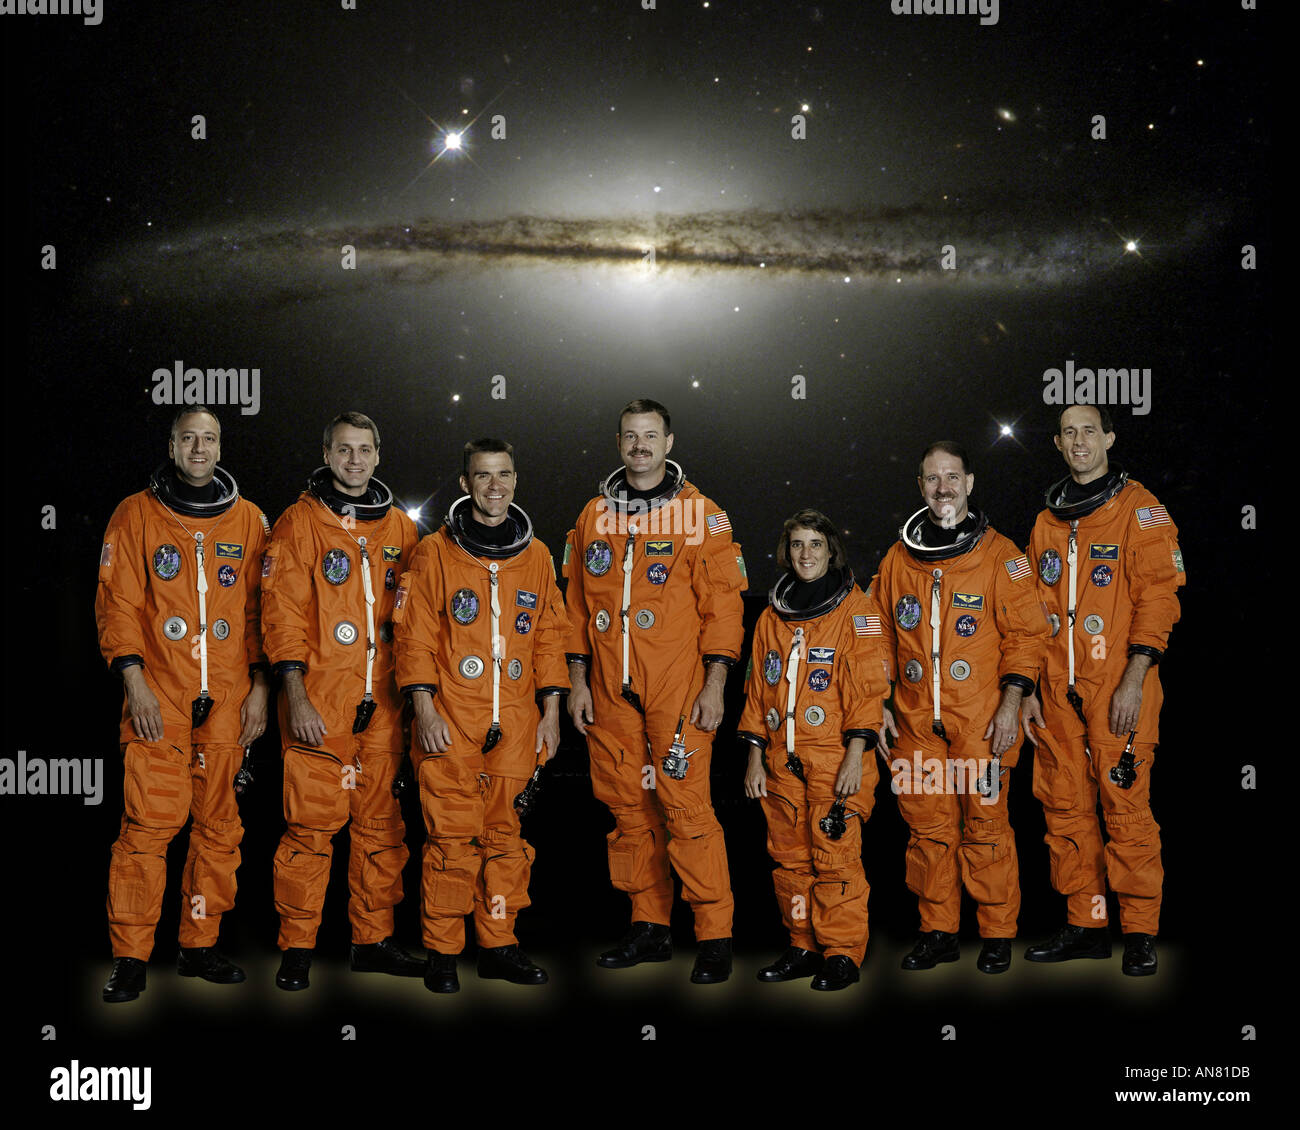 Sieben Astronauten STS-109 Mission stellen traditionelle Pre-Flight Crew Porträt Stockfoto